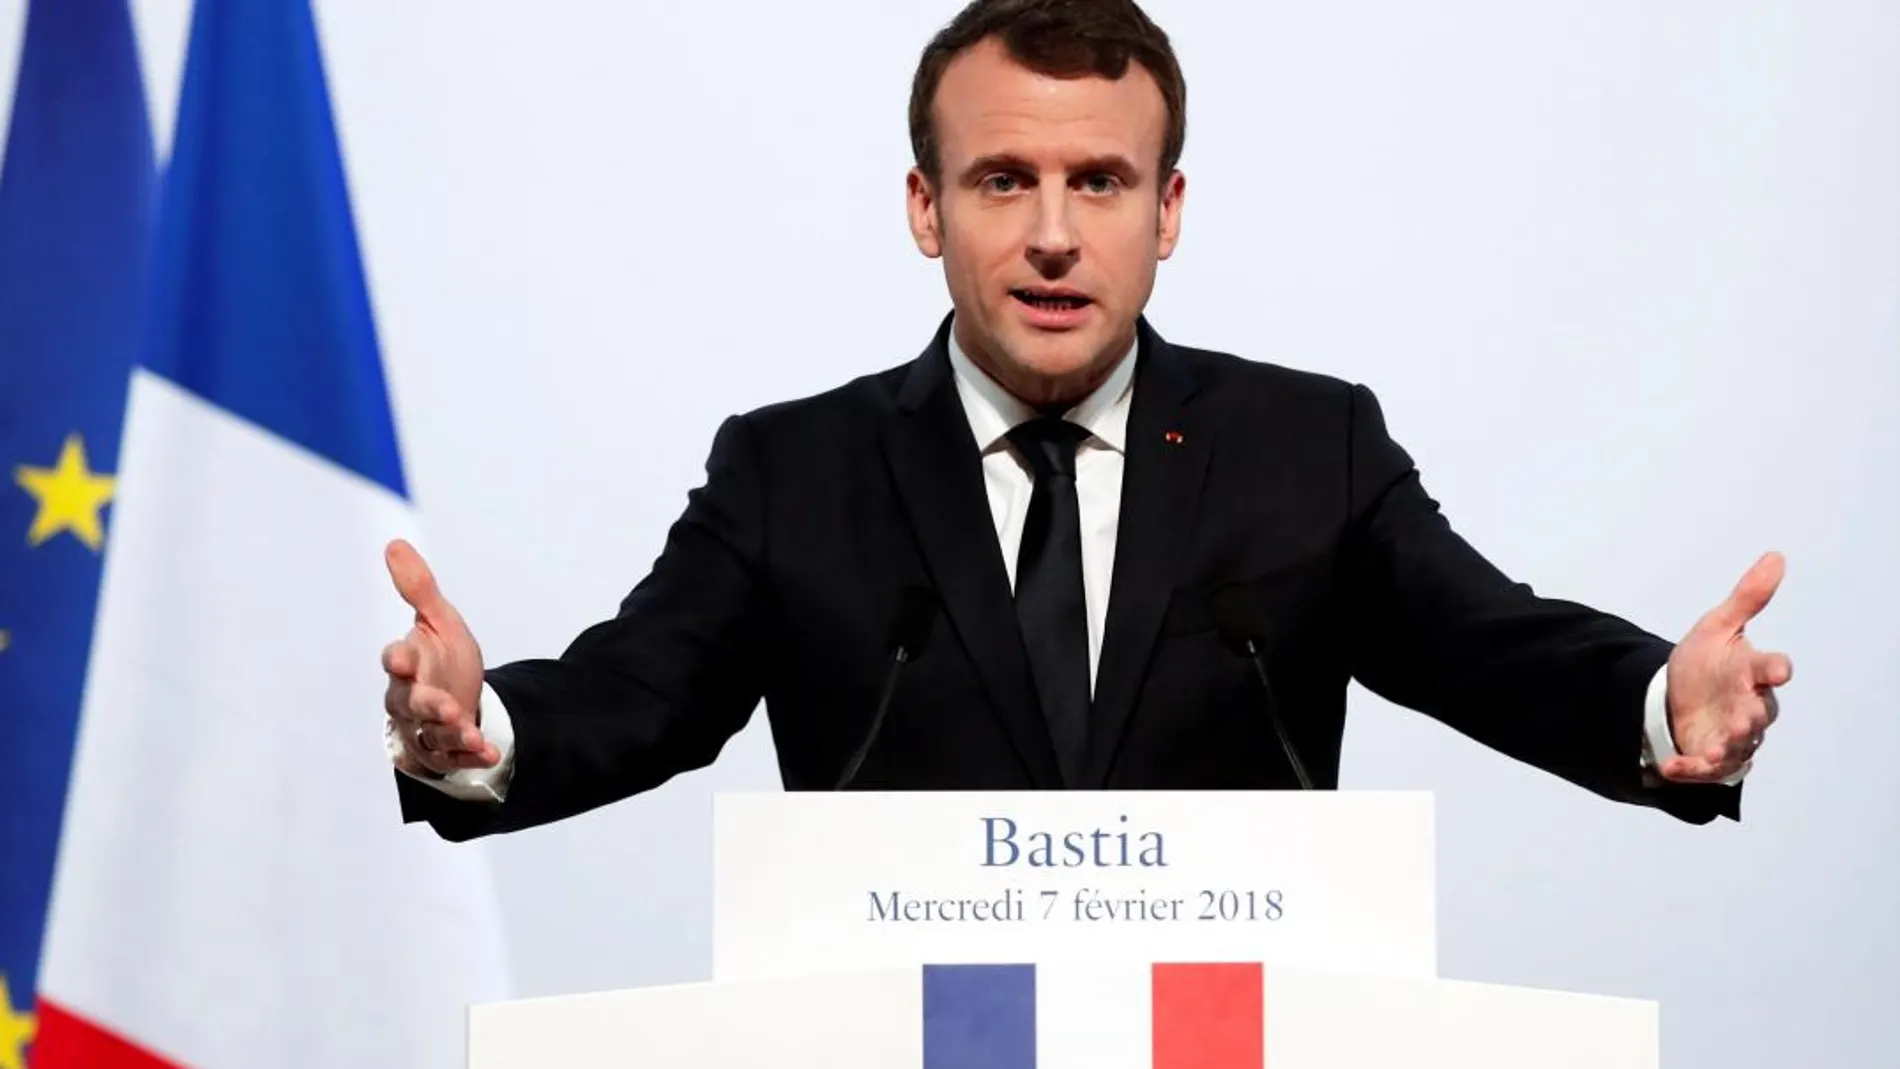 El presidente francés, Emmanuel Macron, pronuncia su discurso durante un acto en el centro cultural Alb'Oru en Bastia, en la isla de Córcega, Francia